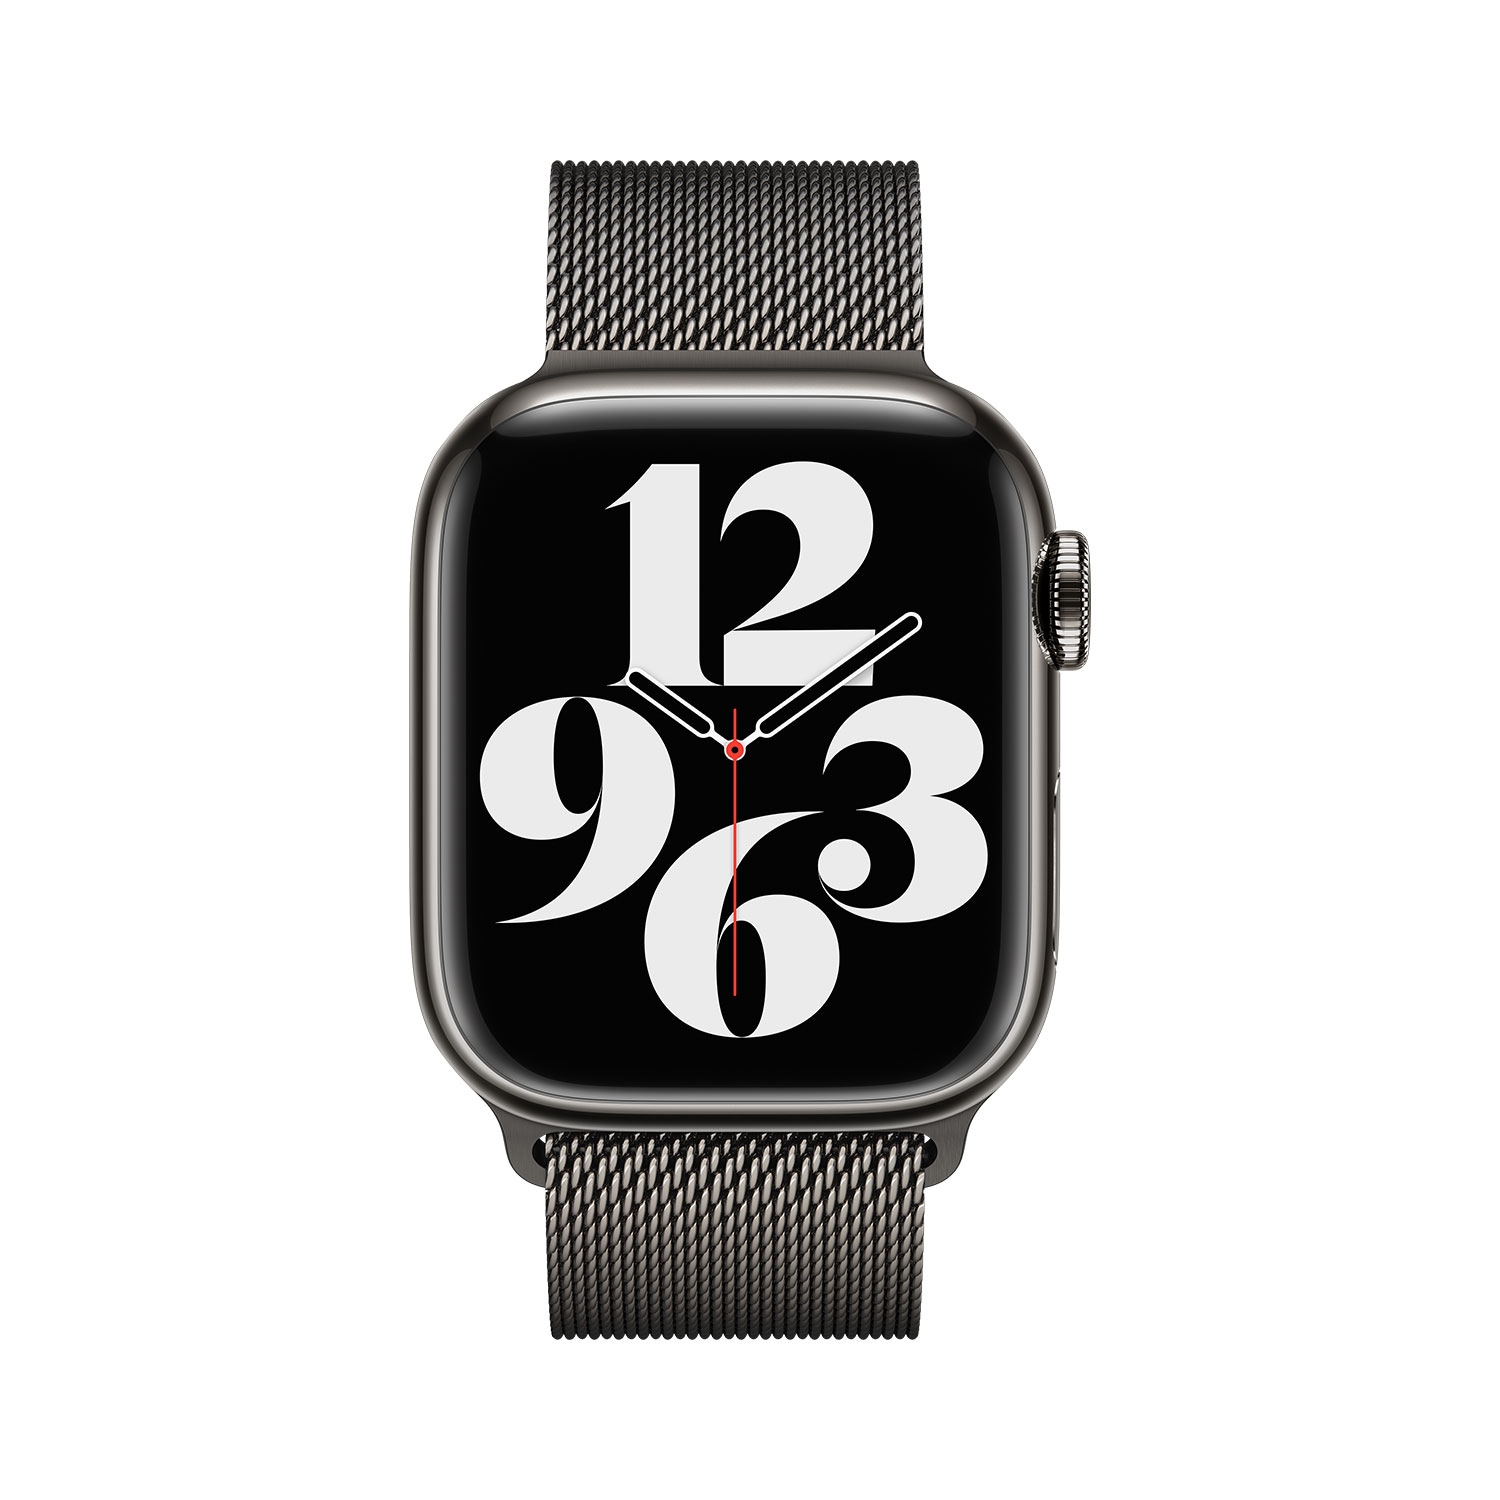 Apple »41 online OTTO mm, jetzt bei Milanaise Apple Smartwatch-Armband Watch« für